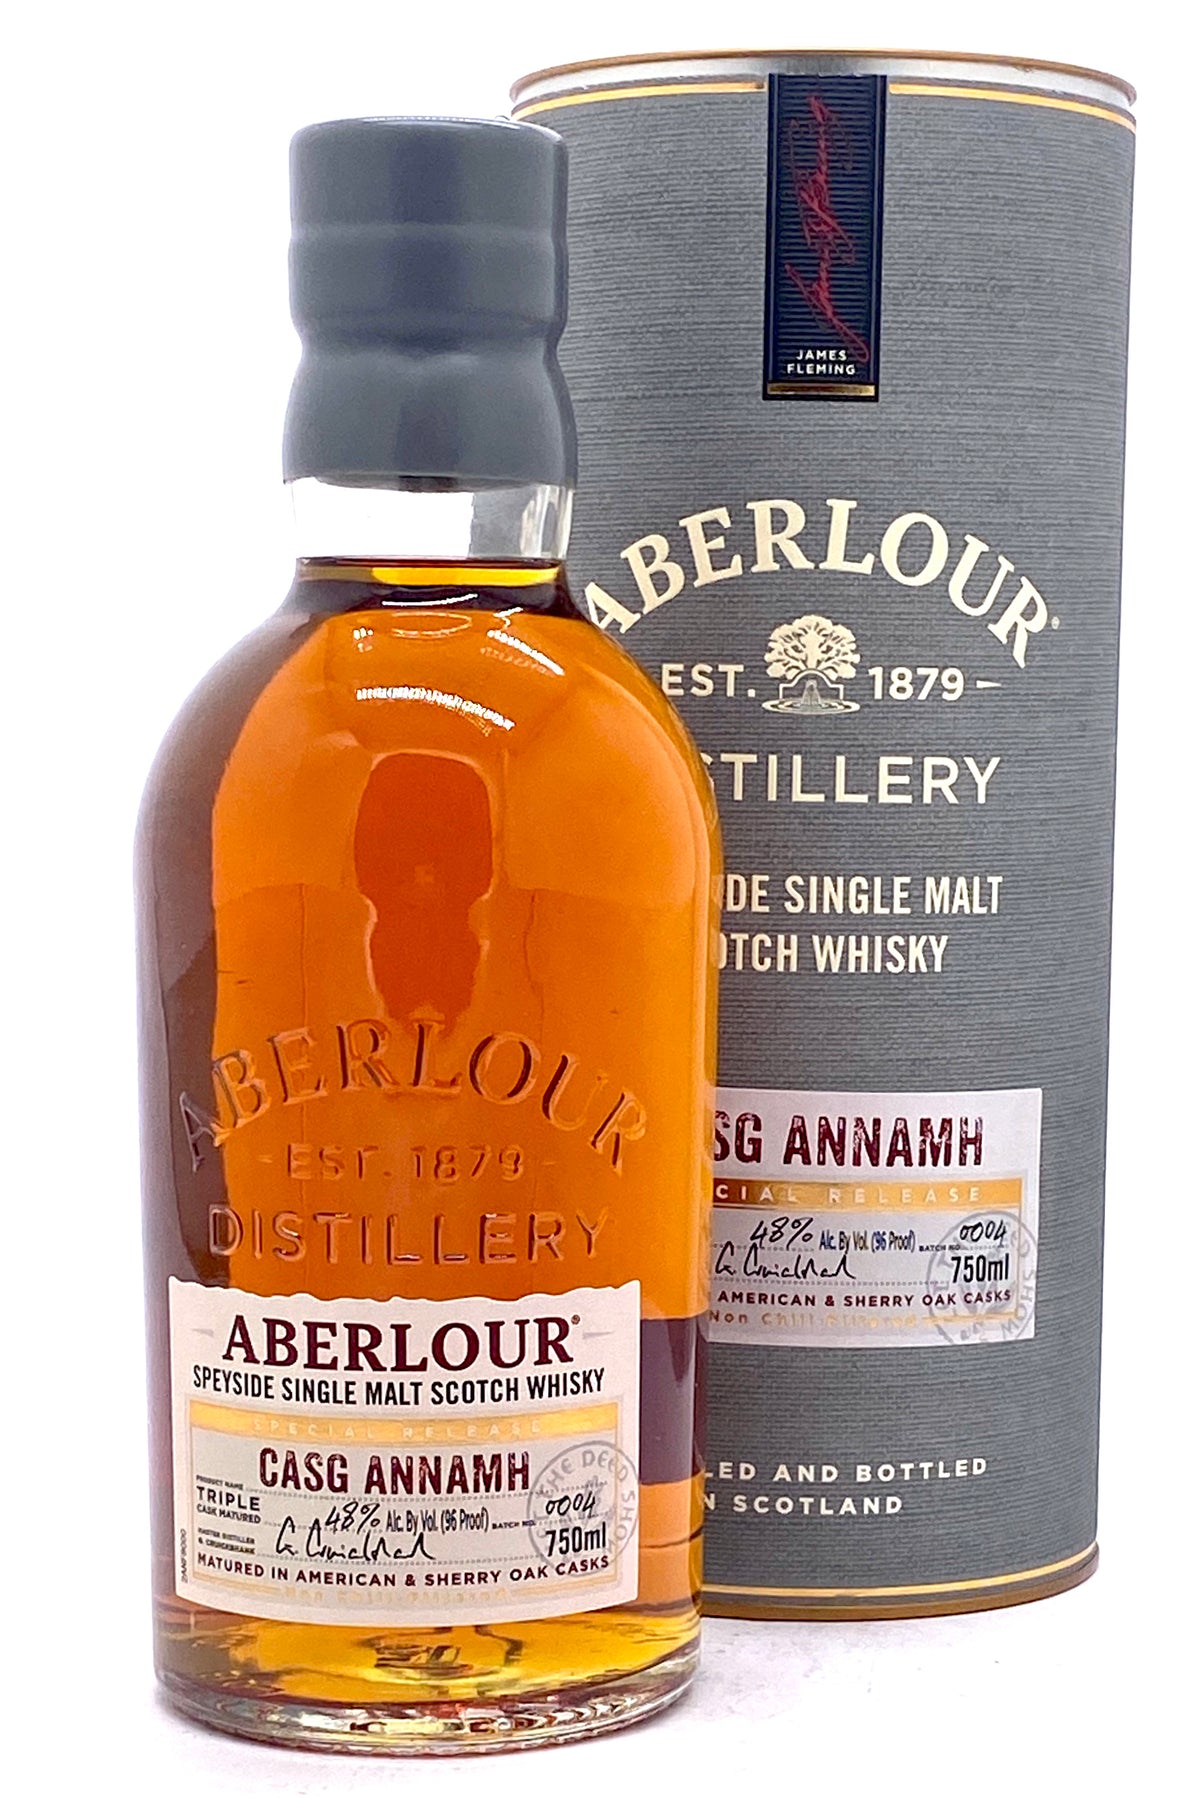 Aberlour Casg Annamh Highland Single Malt Scotch Whisky